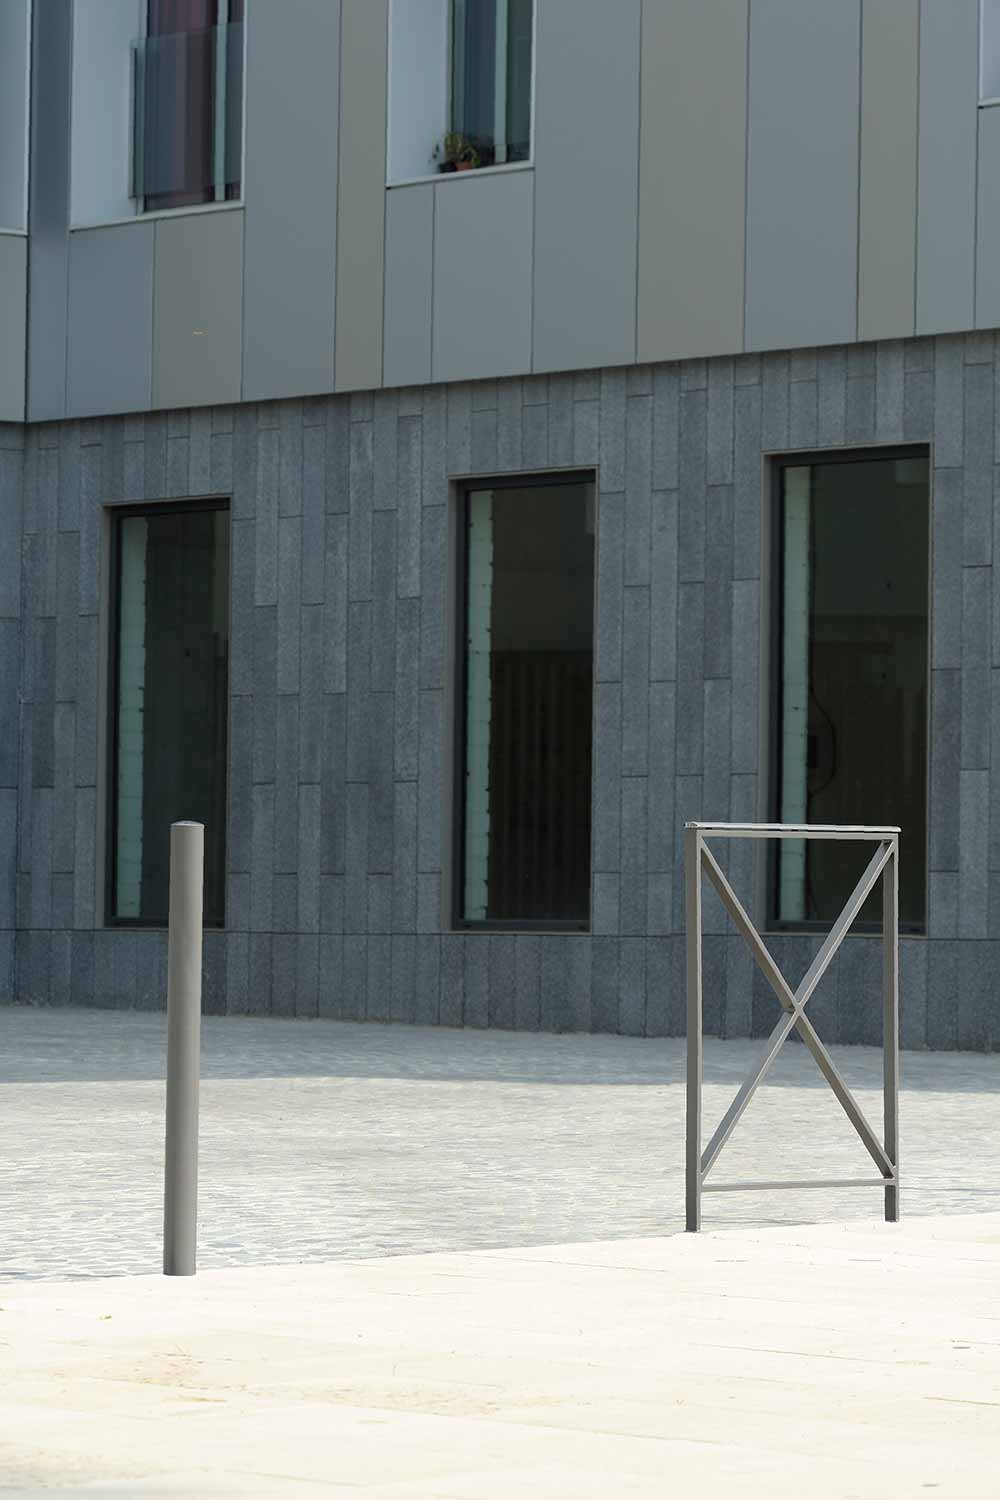 Barrière ACROPOLE conçu et fabriqué par Aréa mobilier urbain